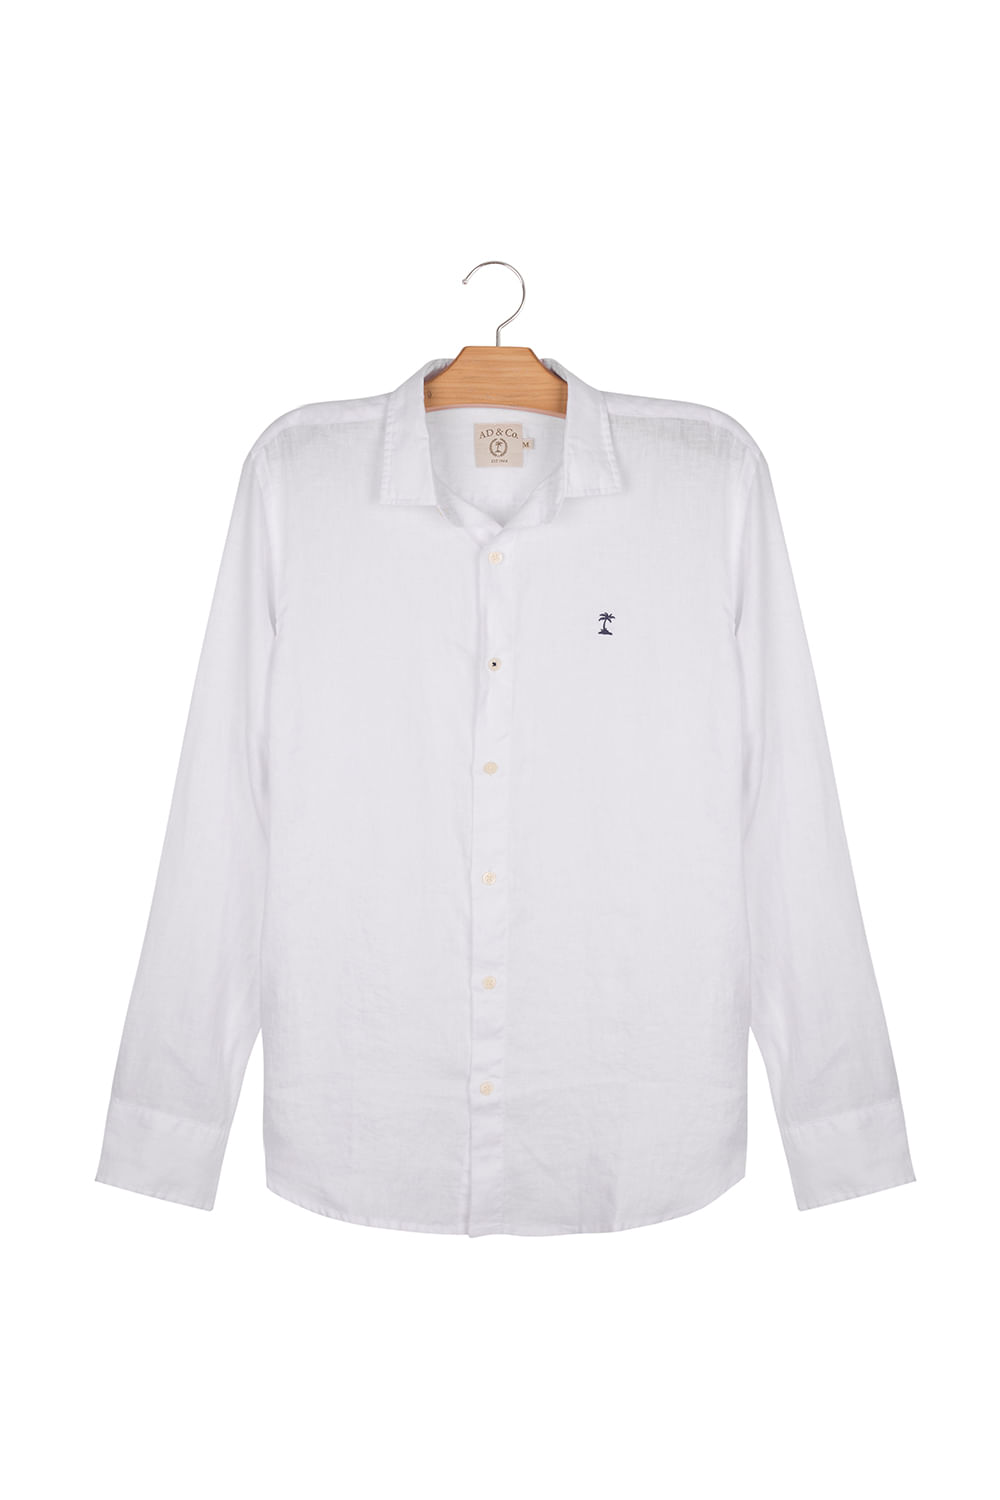 Camisa Linho Saudade ML - Branco